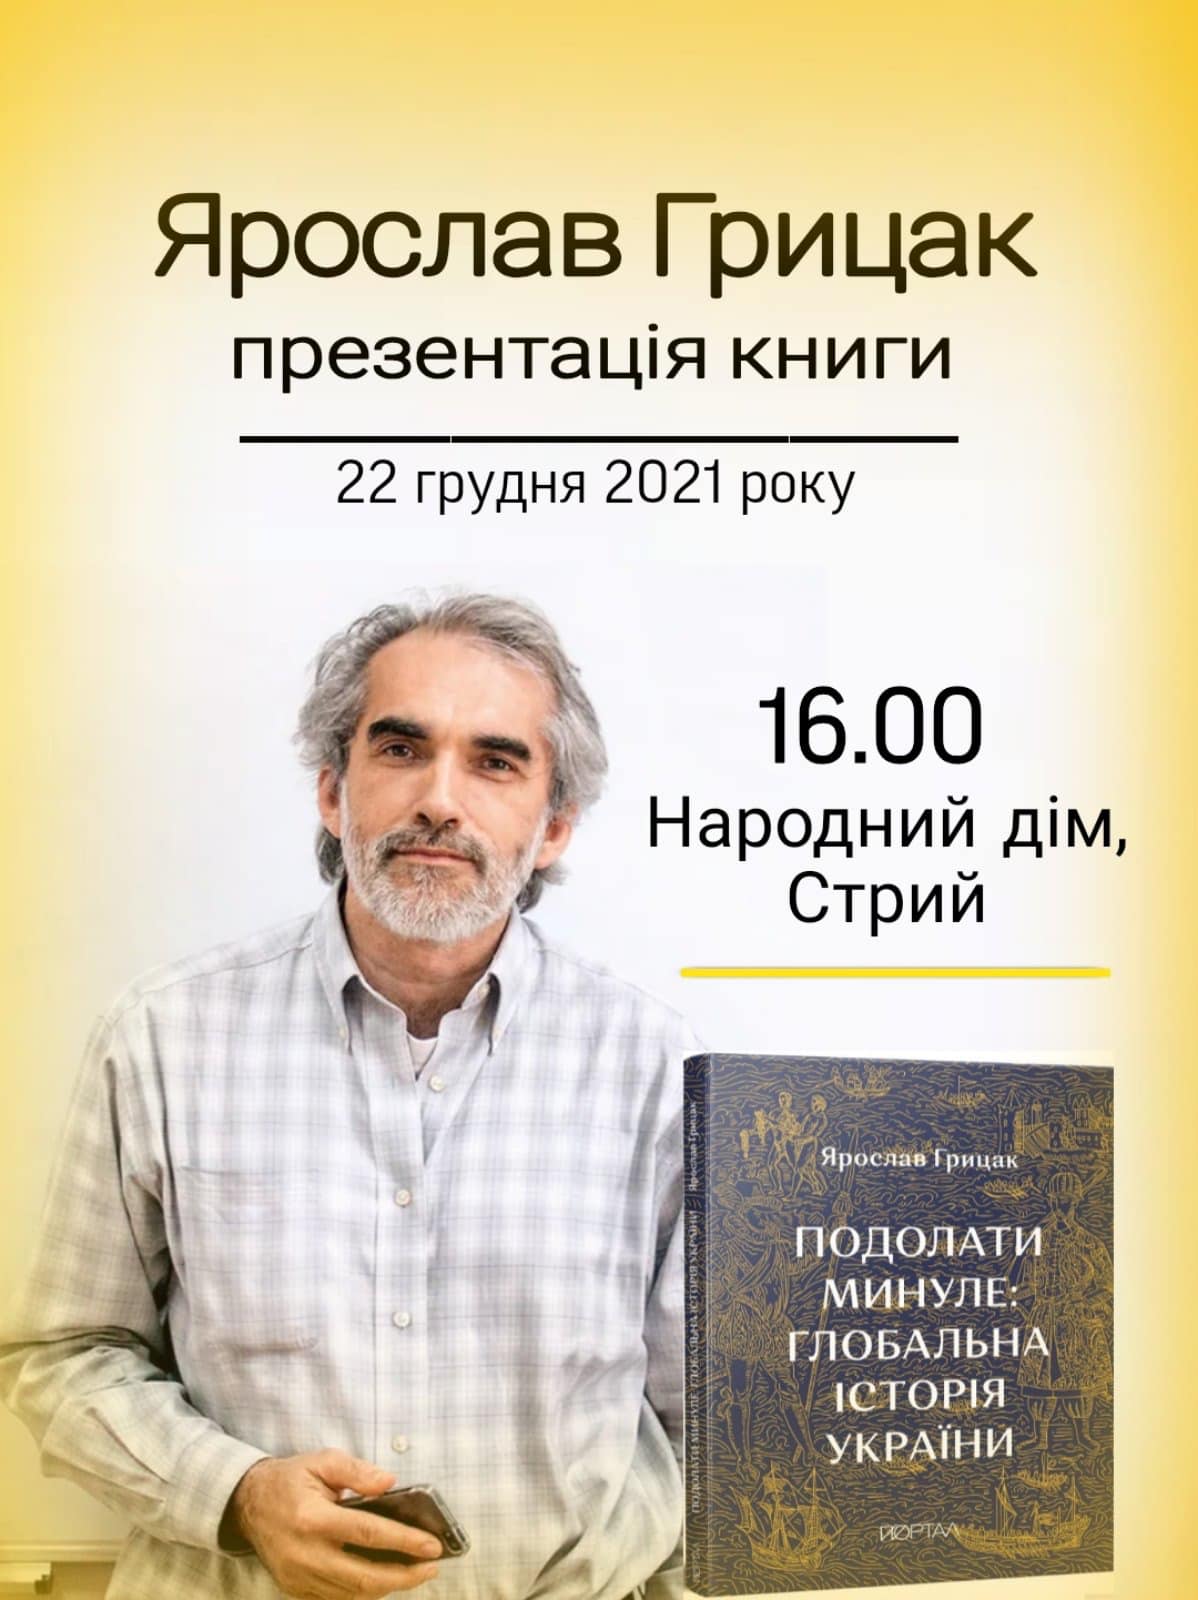 Один з найвидатніших науковців сучасності, наш земляк Ярослав Грицак запрошує на презентацію своєї нової книги «Подолати минуле: глобальна історія України»